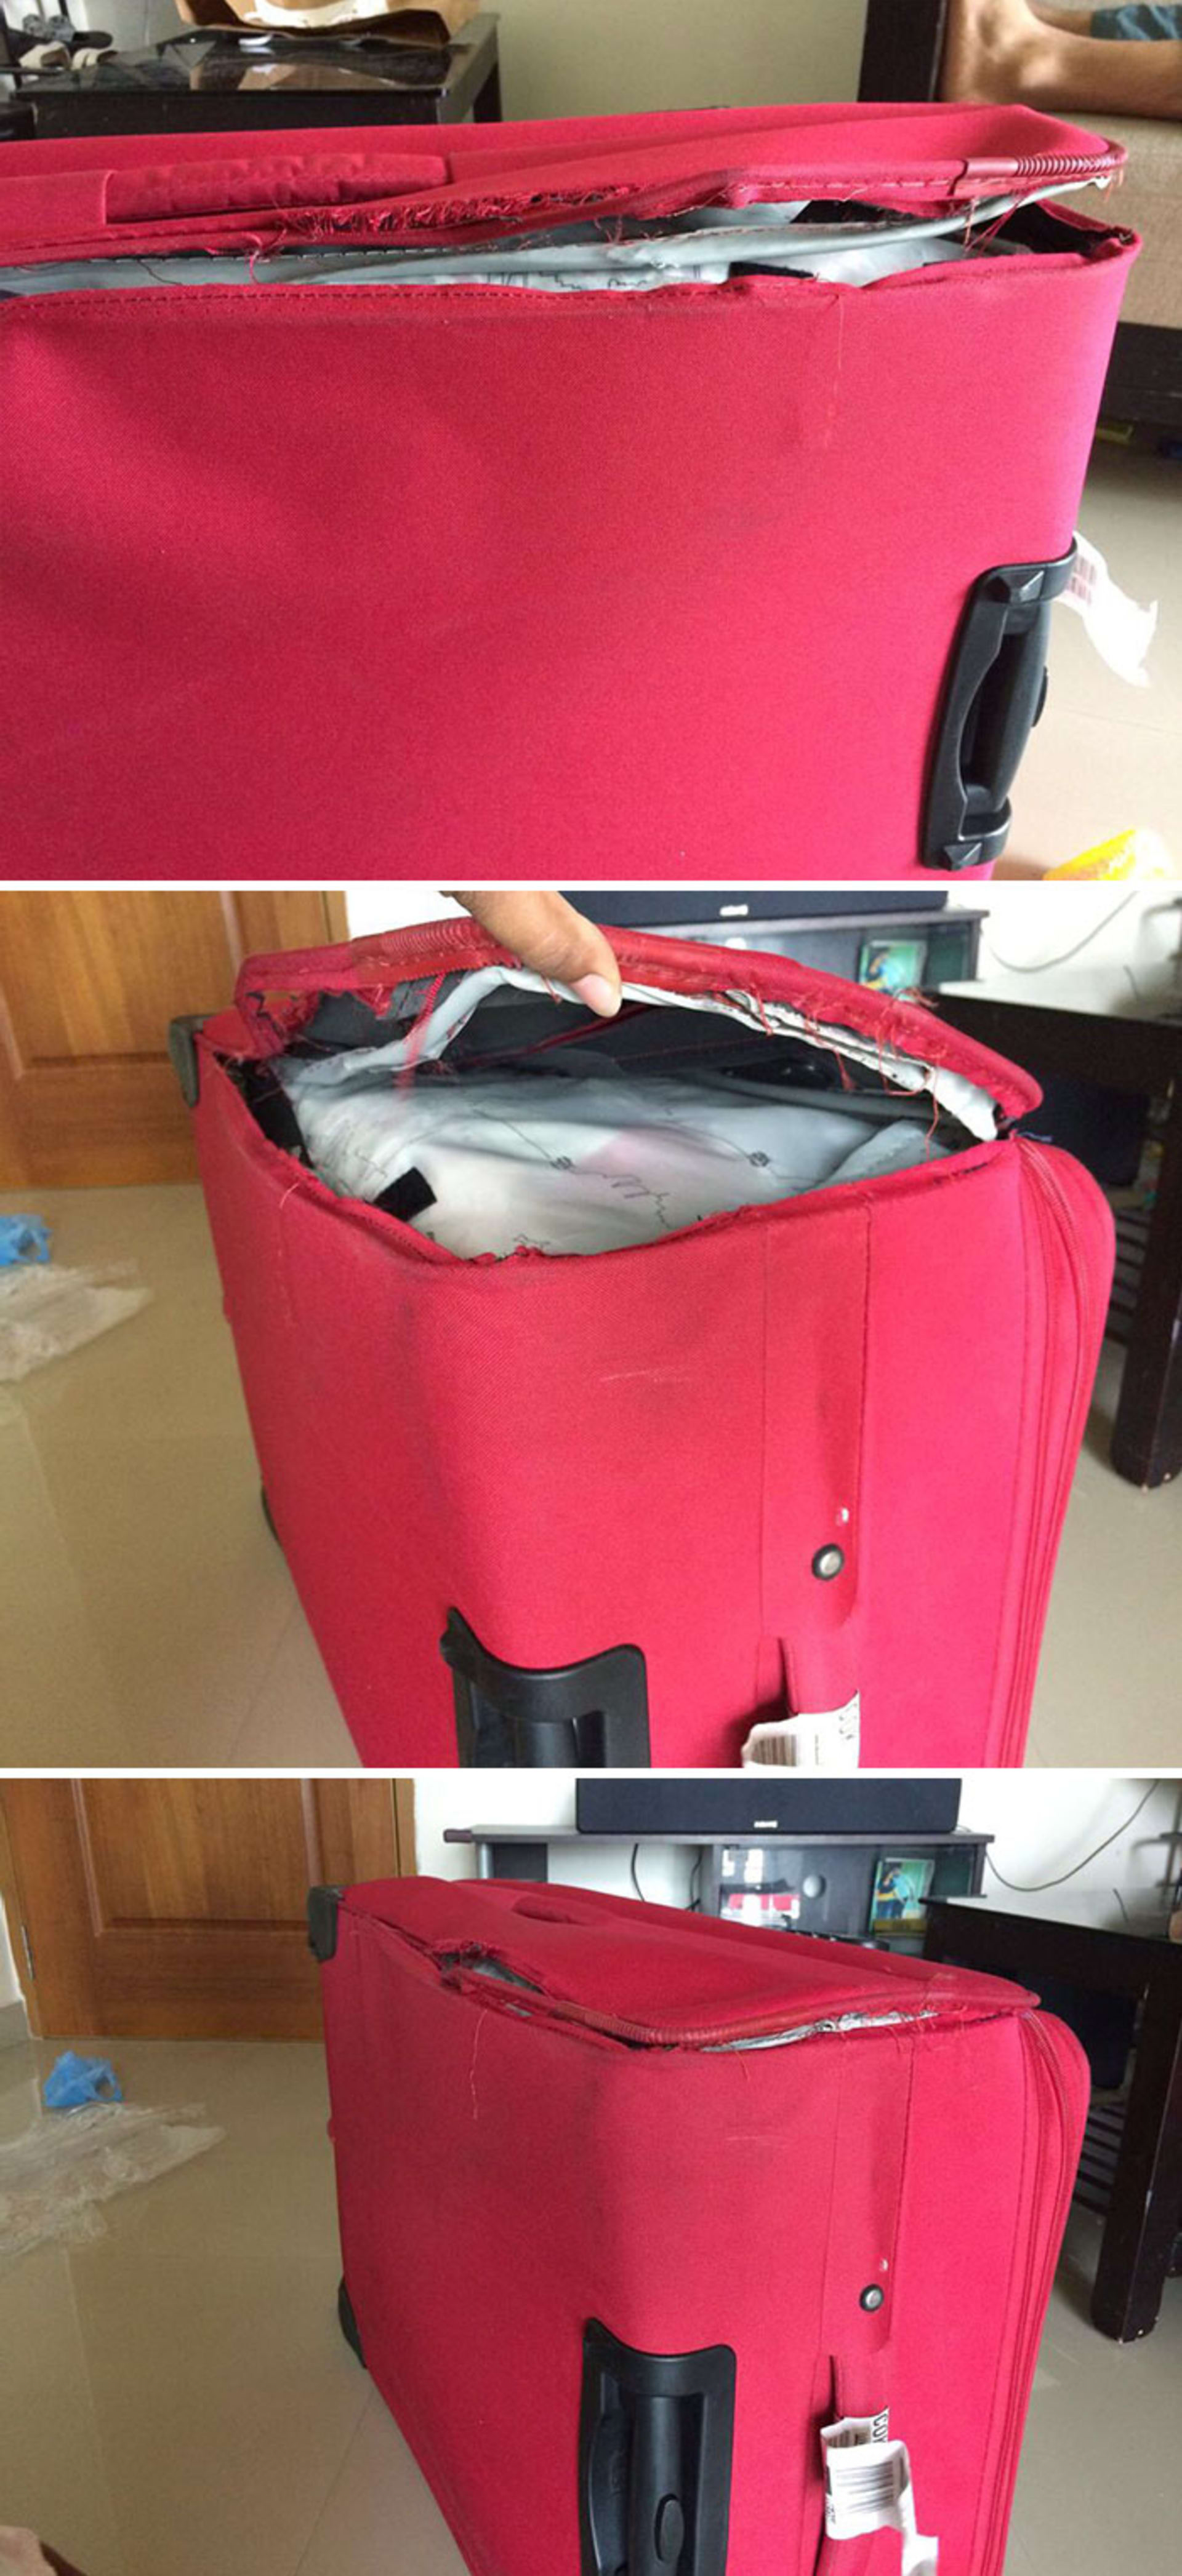 Zničená zavazadla, která na letišti dostat fakt nechcete.